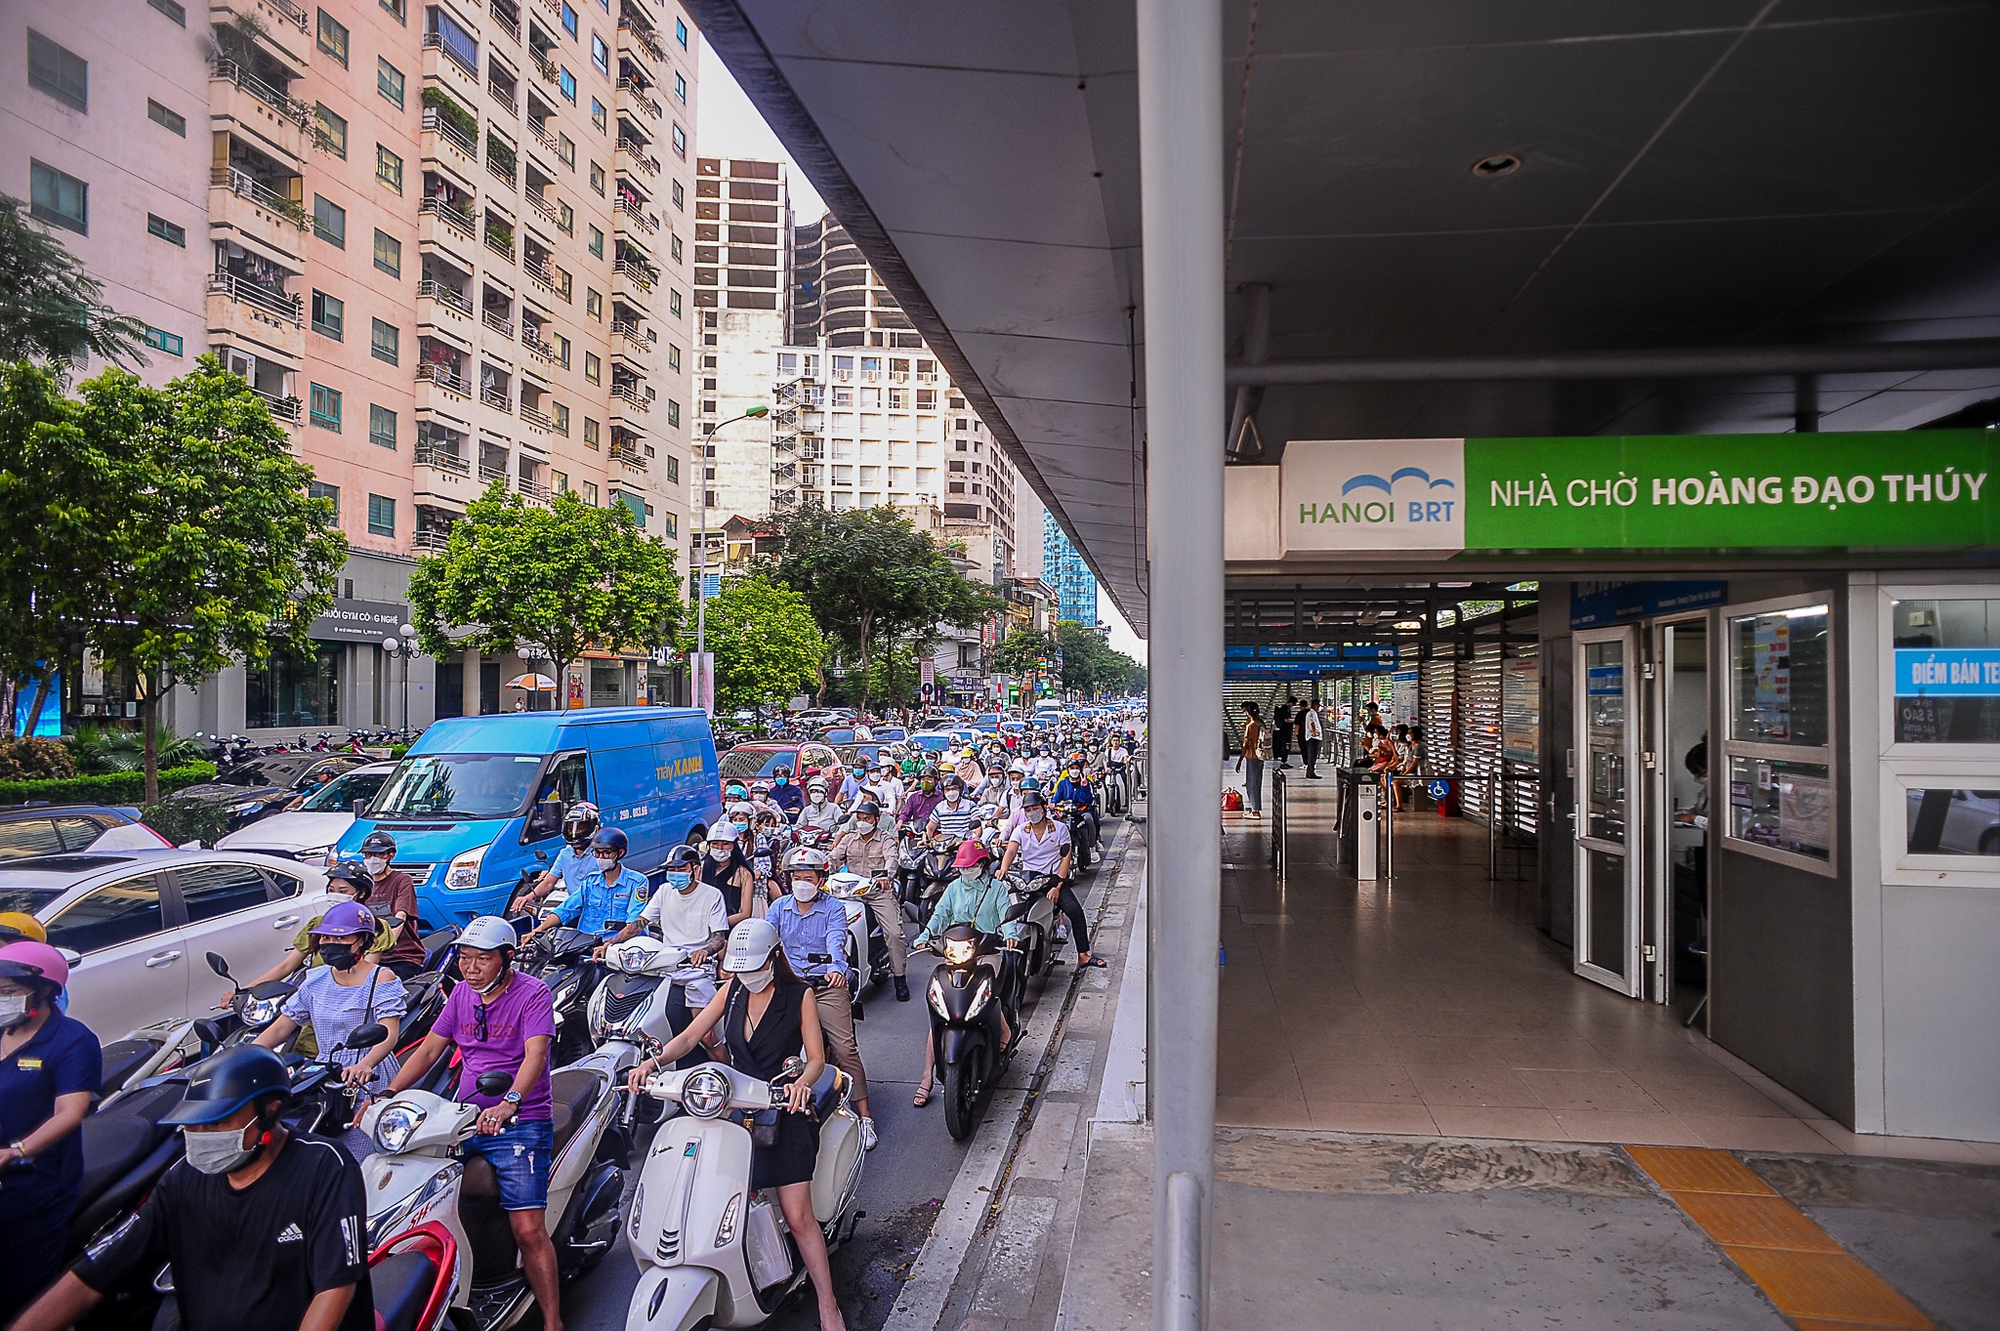 Hà Nội nói gì về tuyến buýt nhanh BRT  - Ảnh 2.